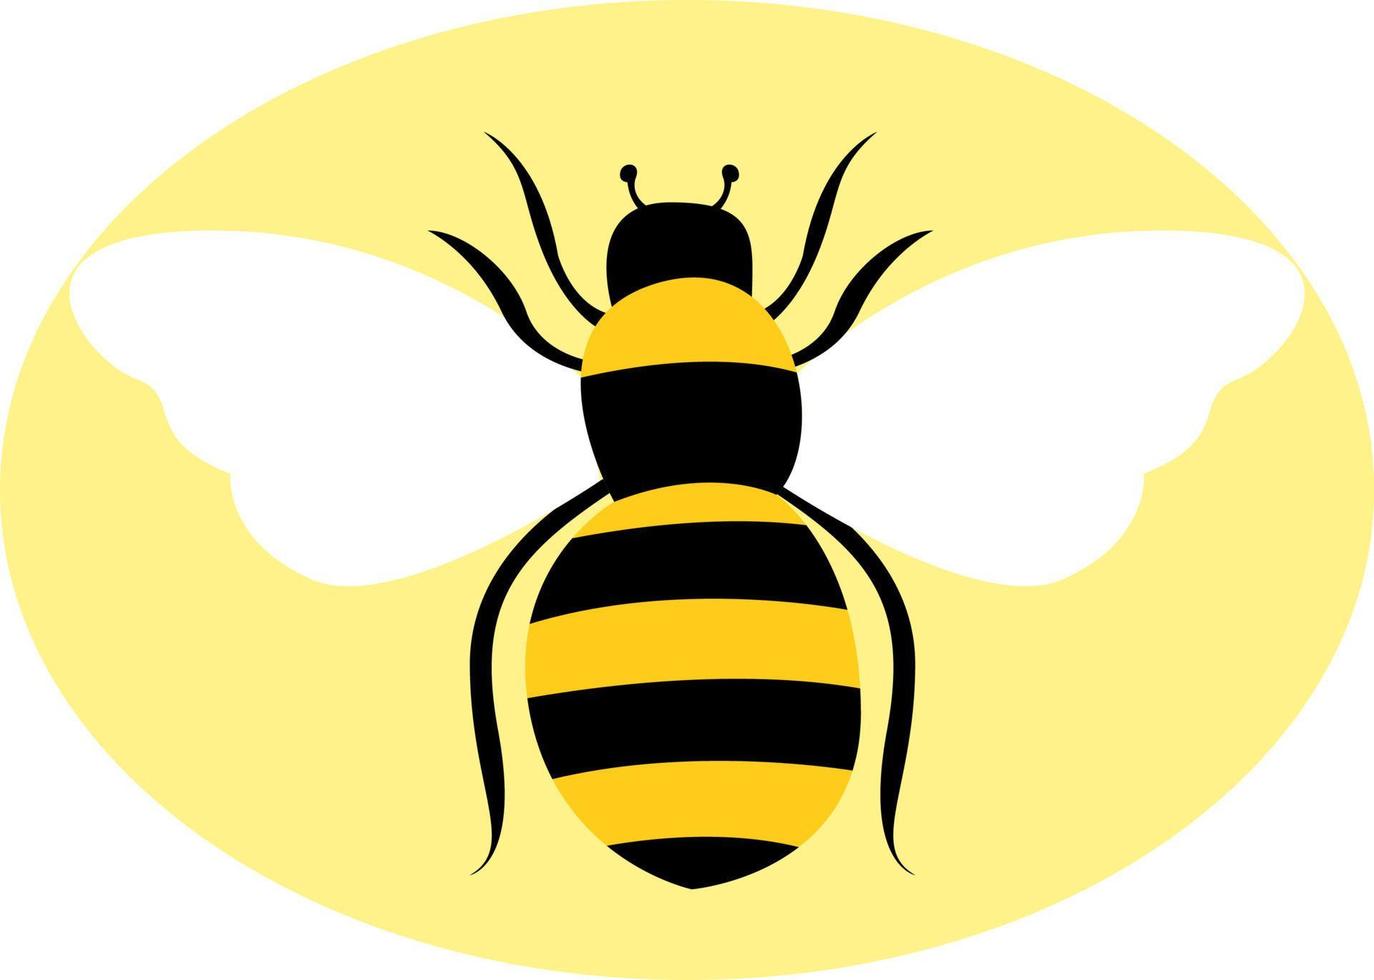 abeille sauvage, illustration, vecteur sur fond blanc.